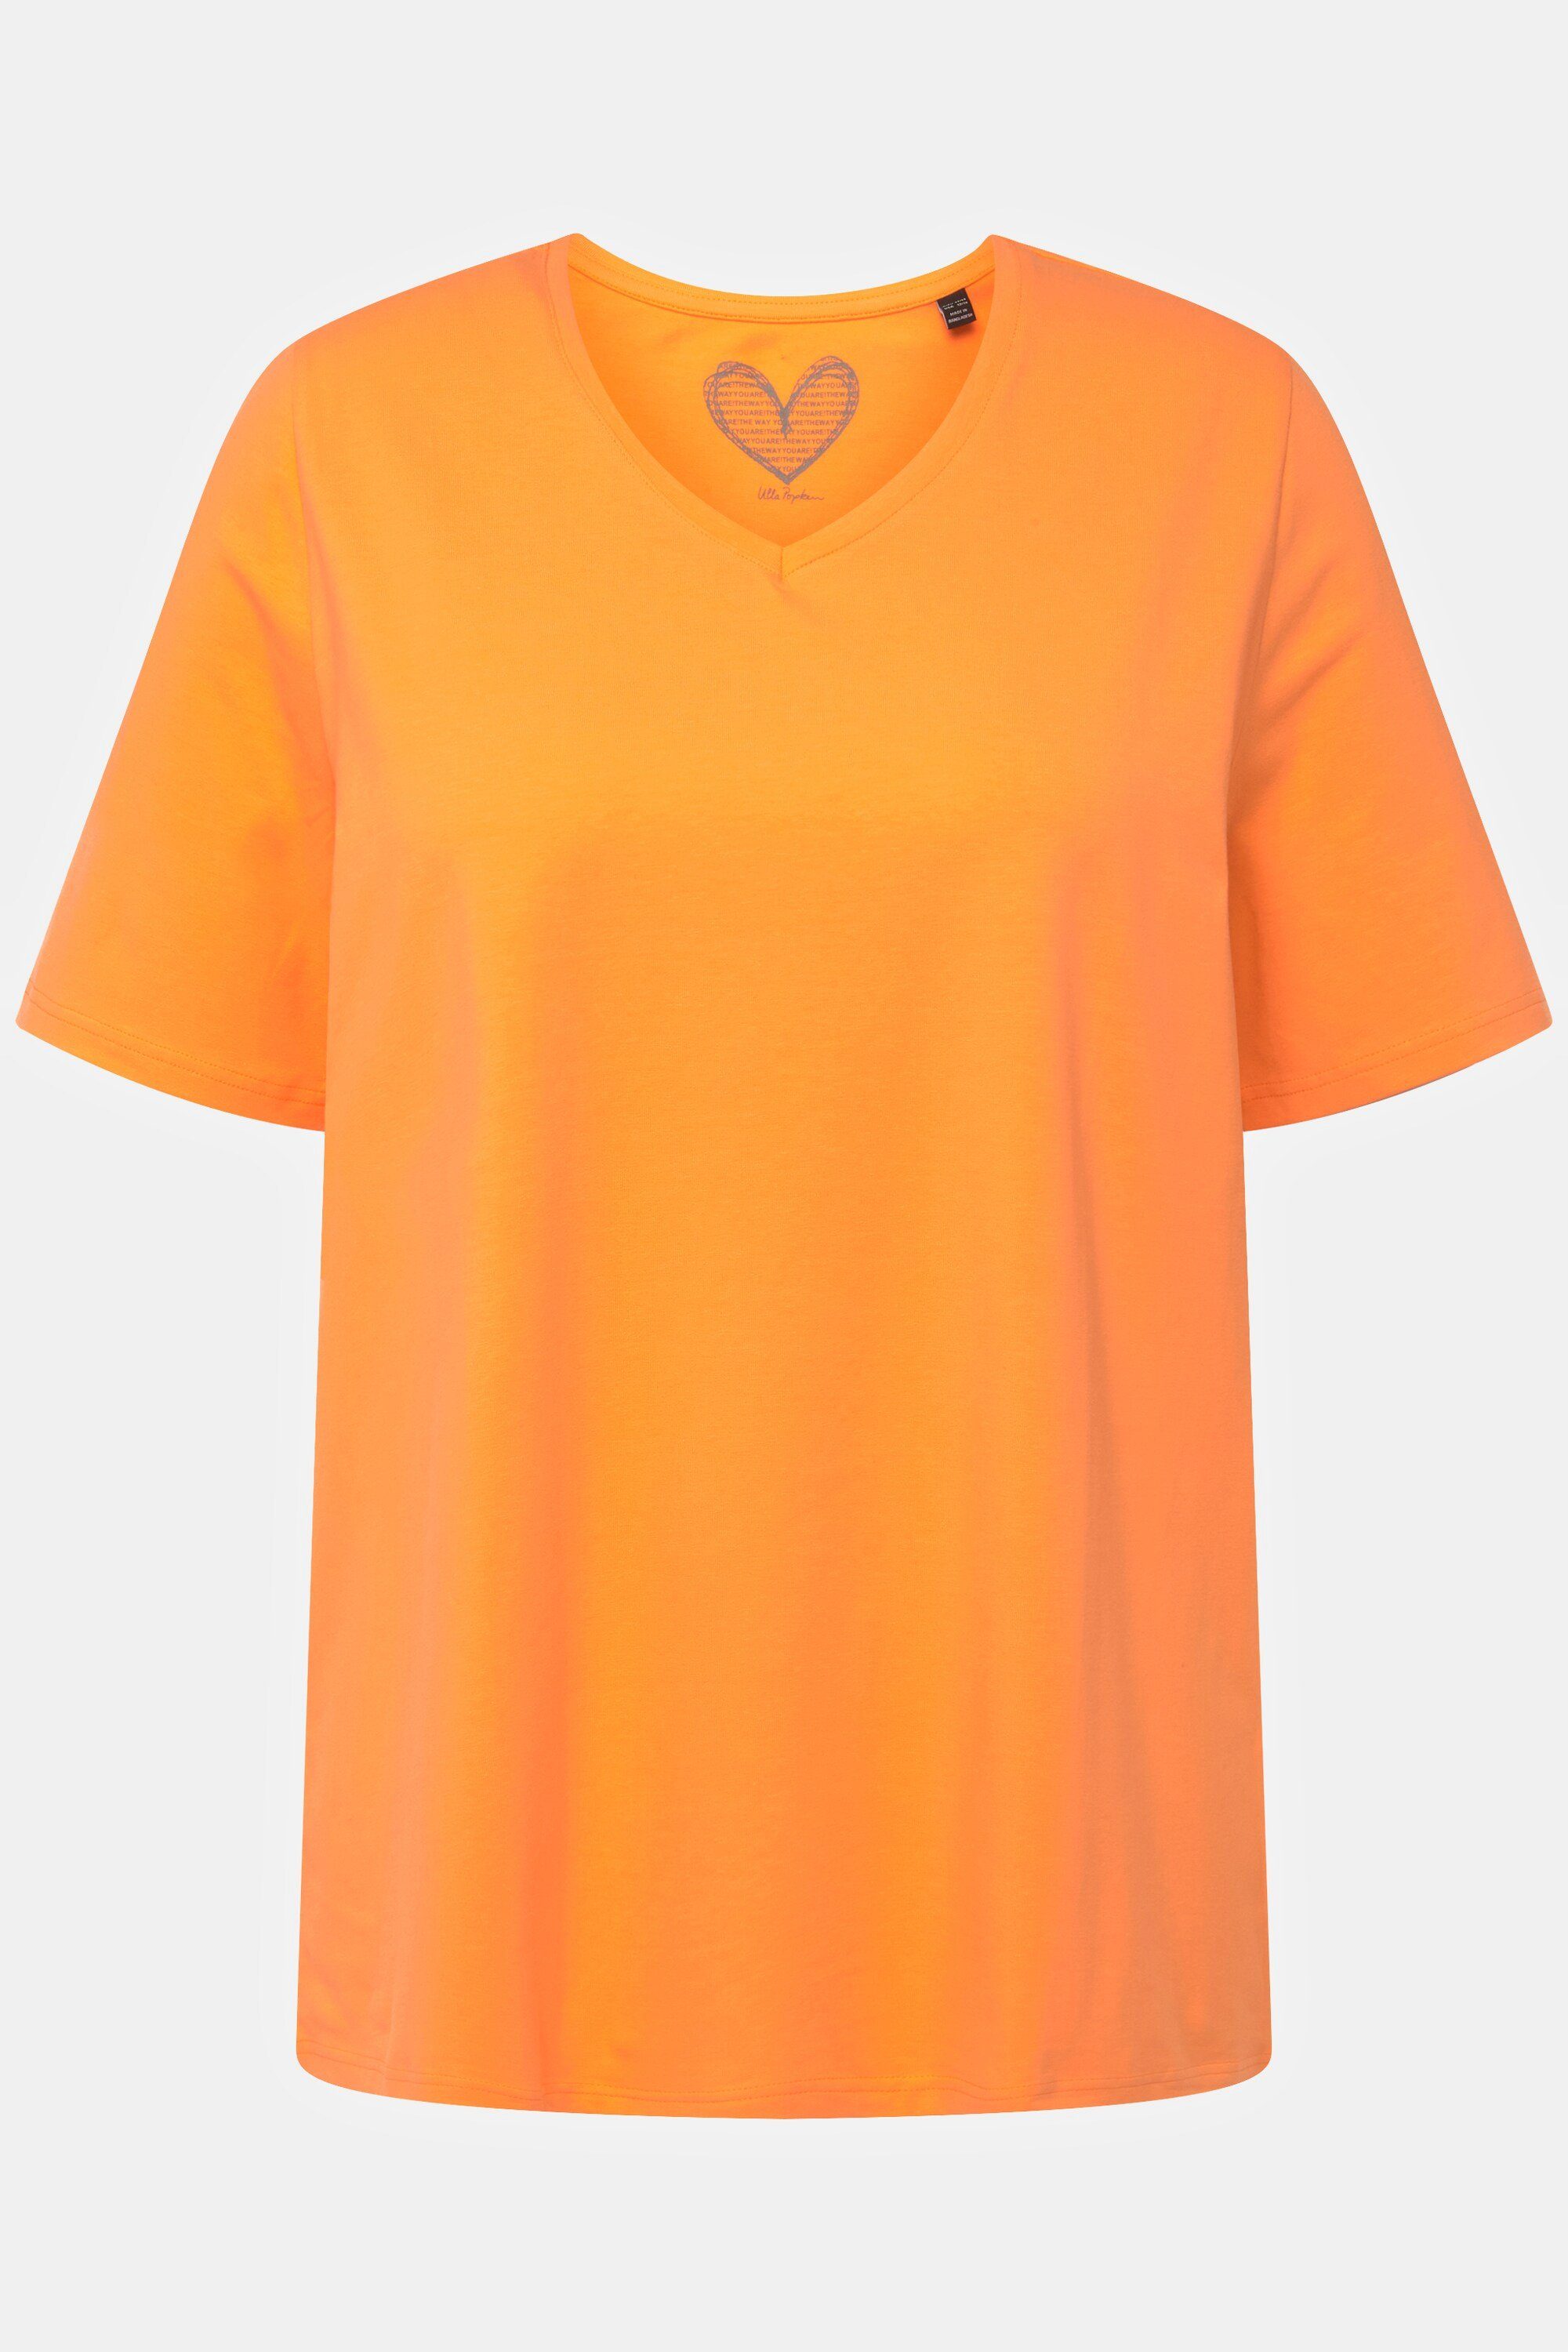 Rundhalsshirt orange Ulla cantaloupe Halbarm V-Ausschnitt T-Shirt Popken A-Linie